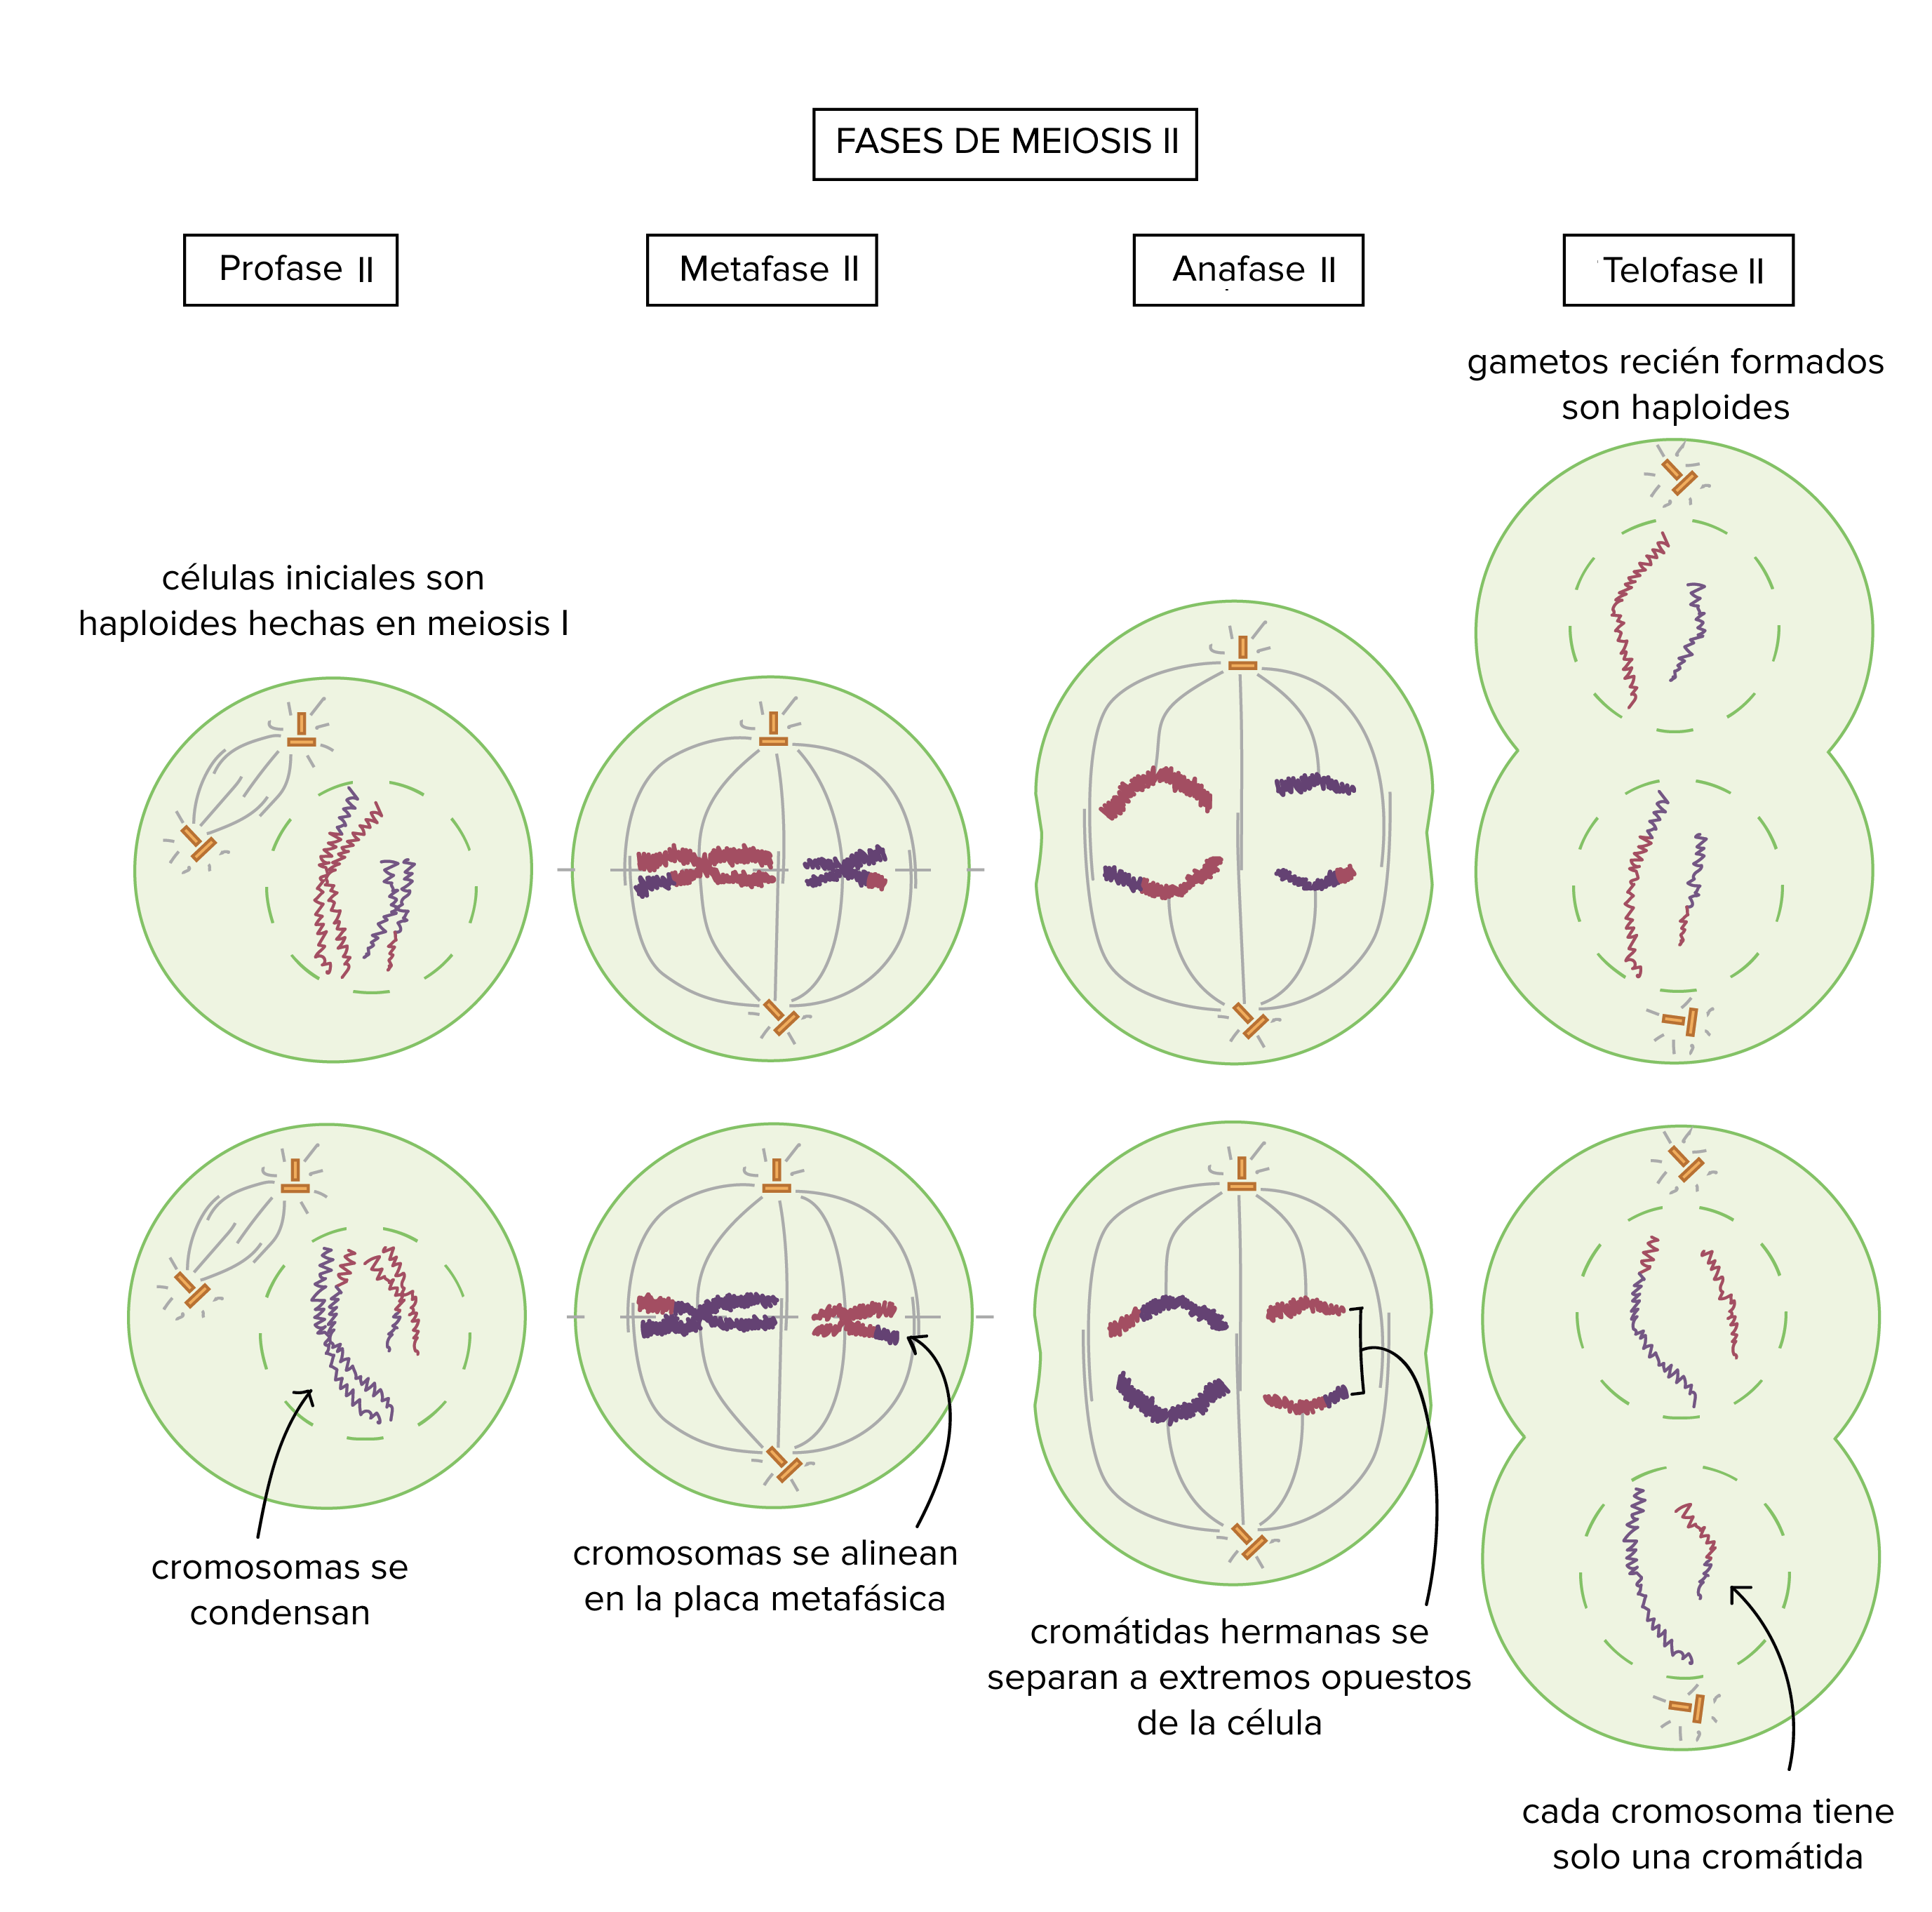 Fases de la meiosis II

Profase II: las células iniciales son las células haploides hechas en la meiosis I. Los cromosomas se condensan.

Metafase II: los cromosomas se alinean en la placa metafásica.

Anafase II: las cromátidas hermanas se separan en extremos opuestos de la célula.

Telofase II: los gametos recién formados son haploides y cada cromosoma tiene solo una cromátida.